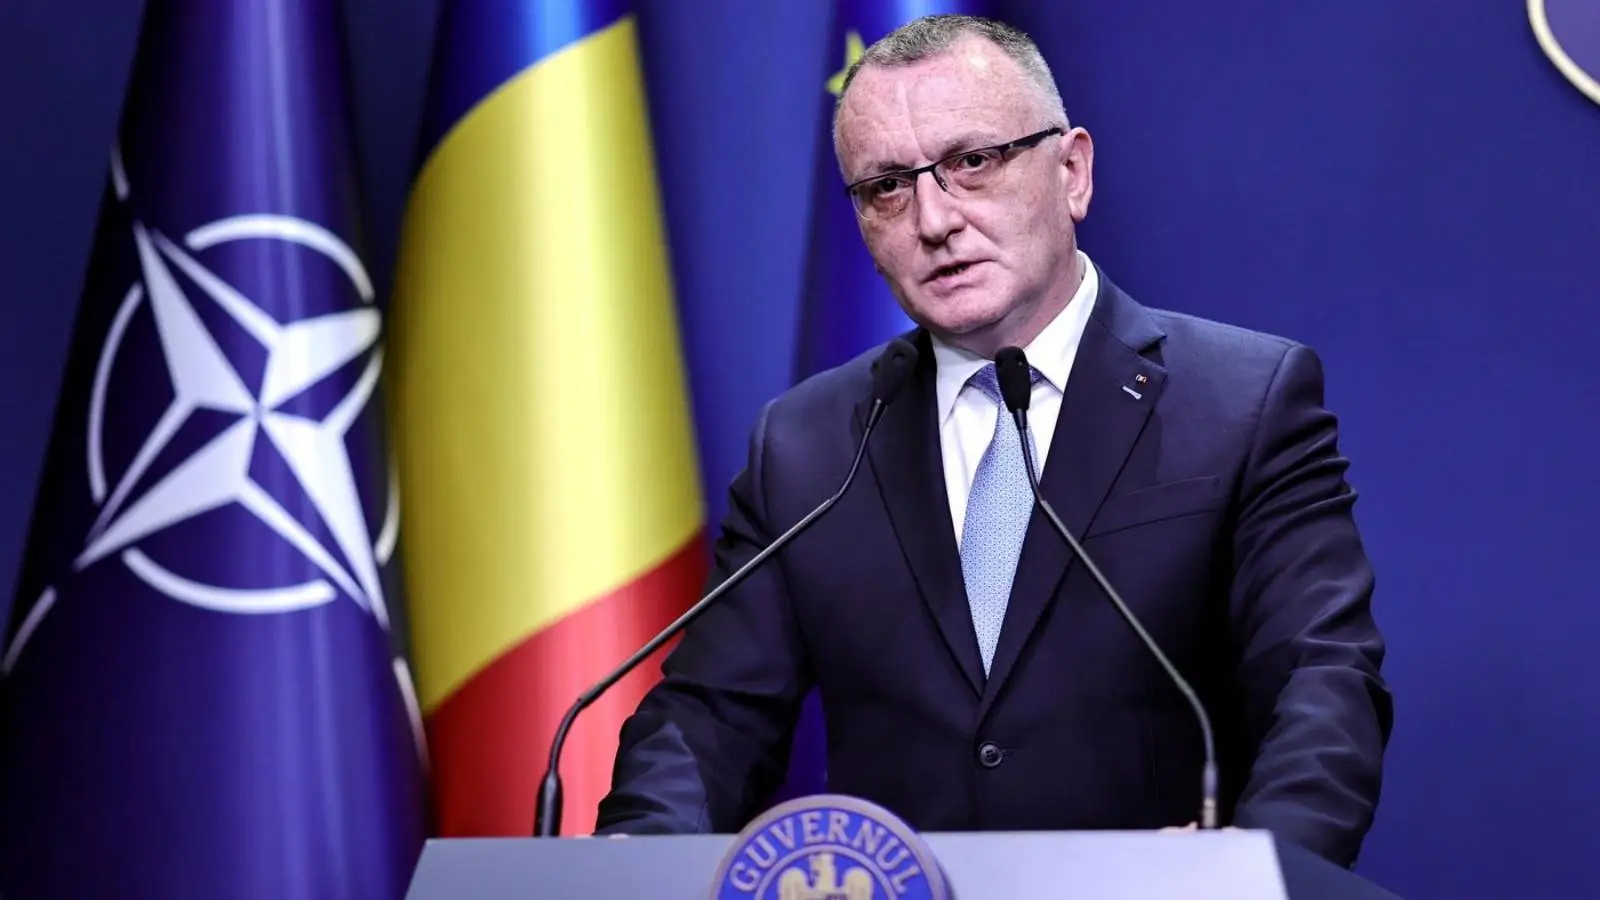 Undervisningsminister SIDSTE GANG Vigtig national meddelelse til alle rumænere